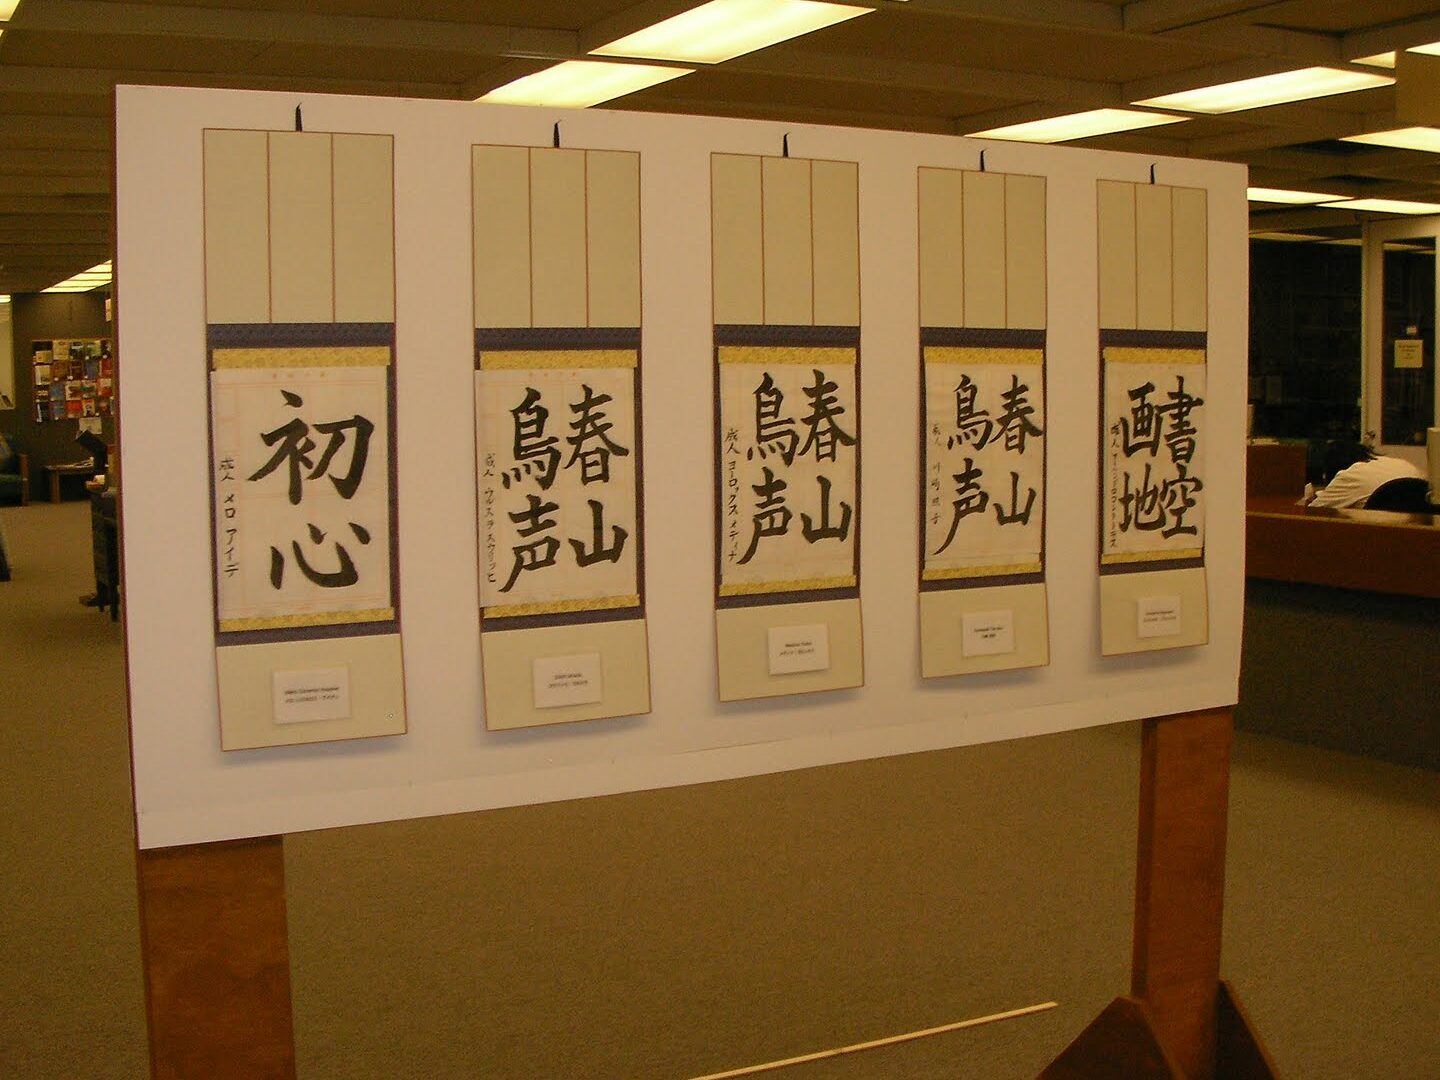 Significados de los Caracteres en la Escritura China: Una Profunda Mirada a la Semántica de los Símbolos.